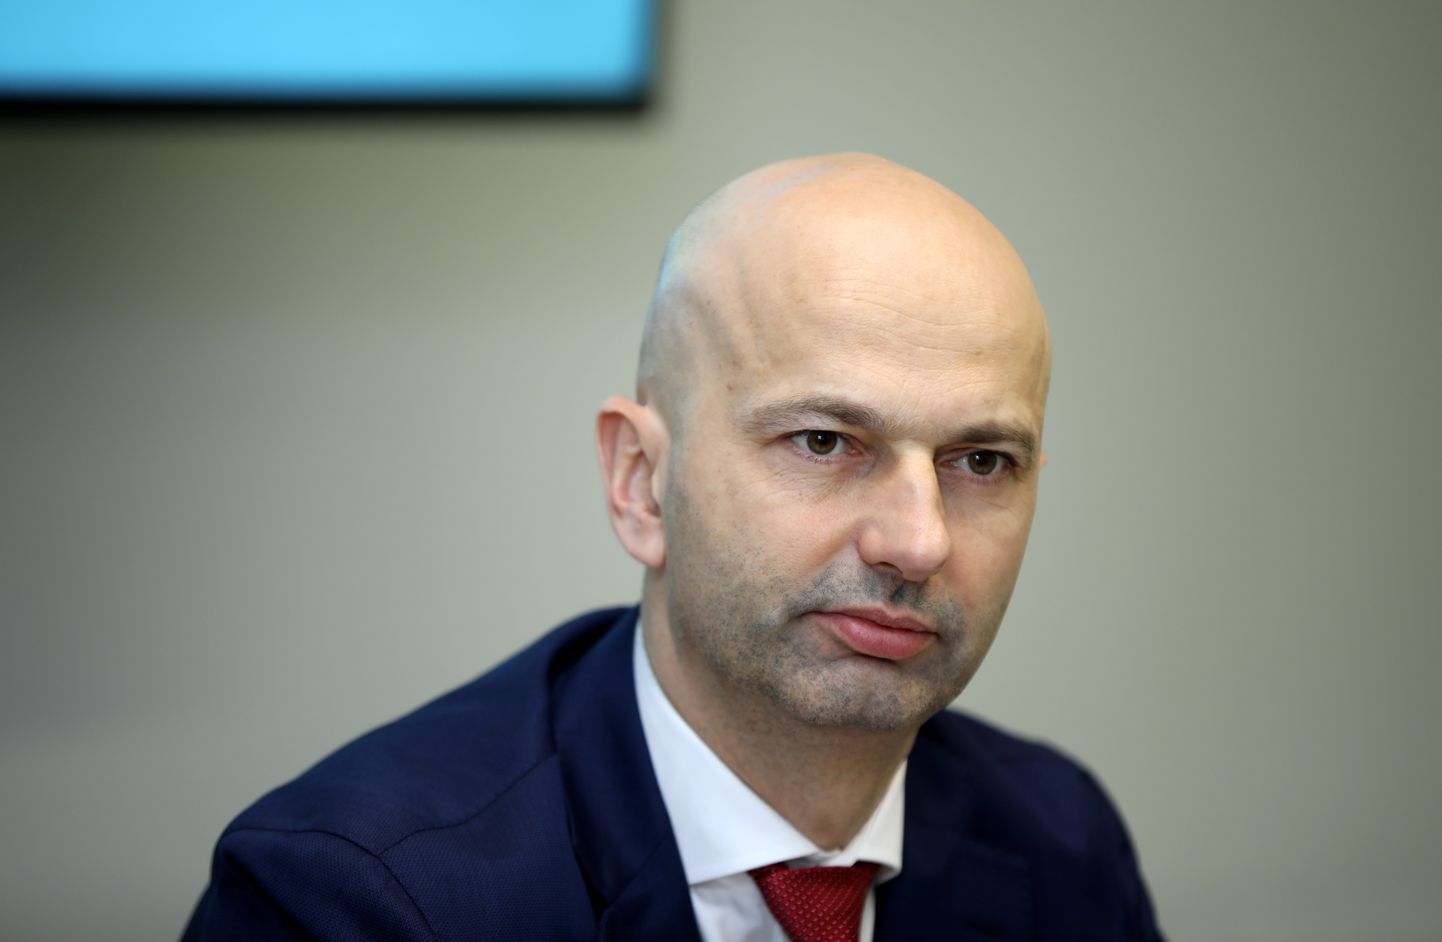 Valsts kancelejas direktors Jānis Citskovskis piedalās preses konferencē par Trauksmes celšanas likuma pirmā darbības gada rezultātiem.